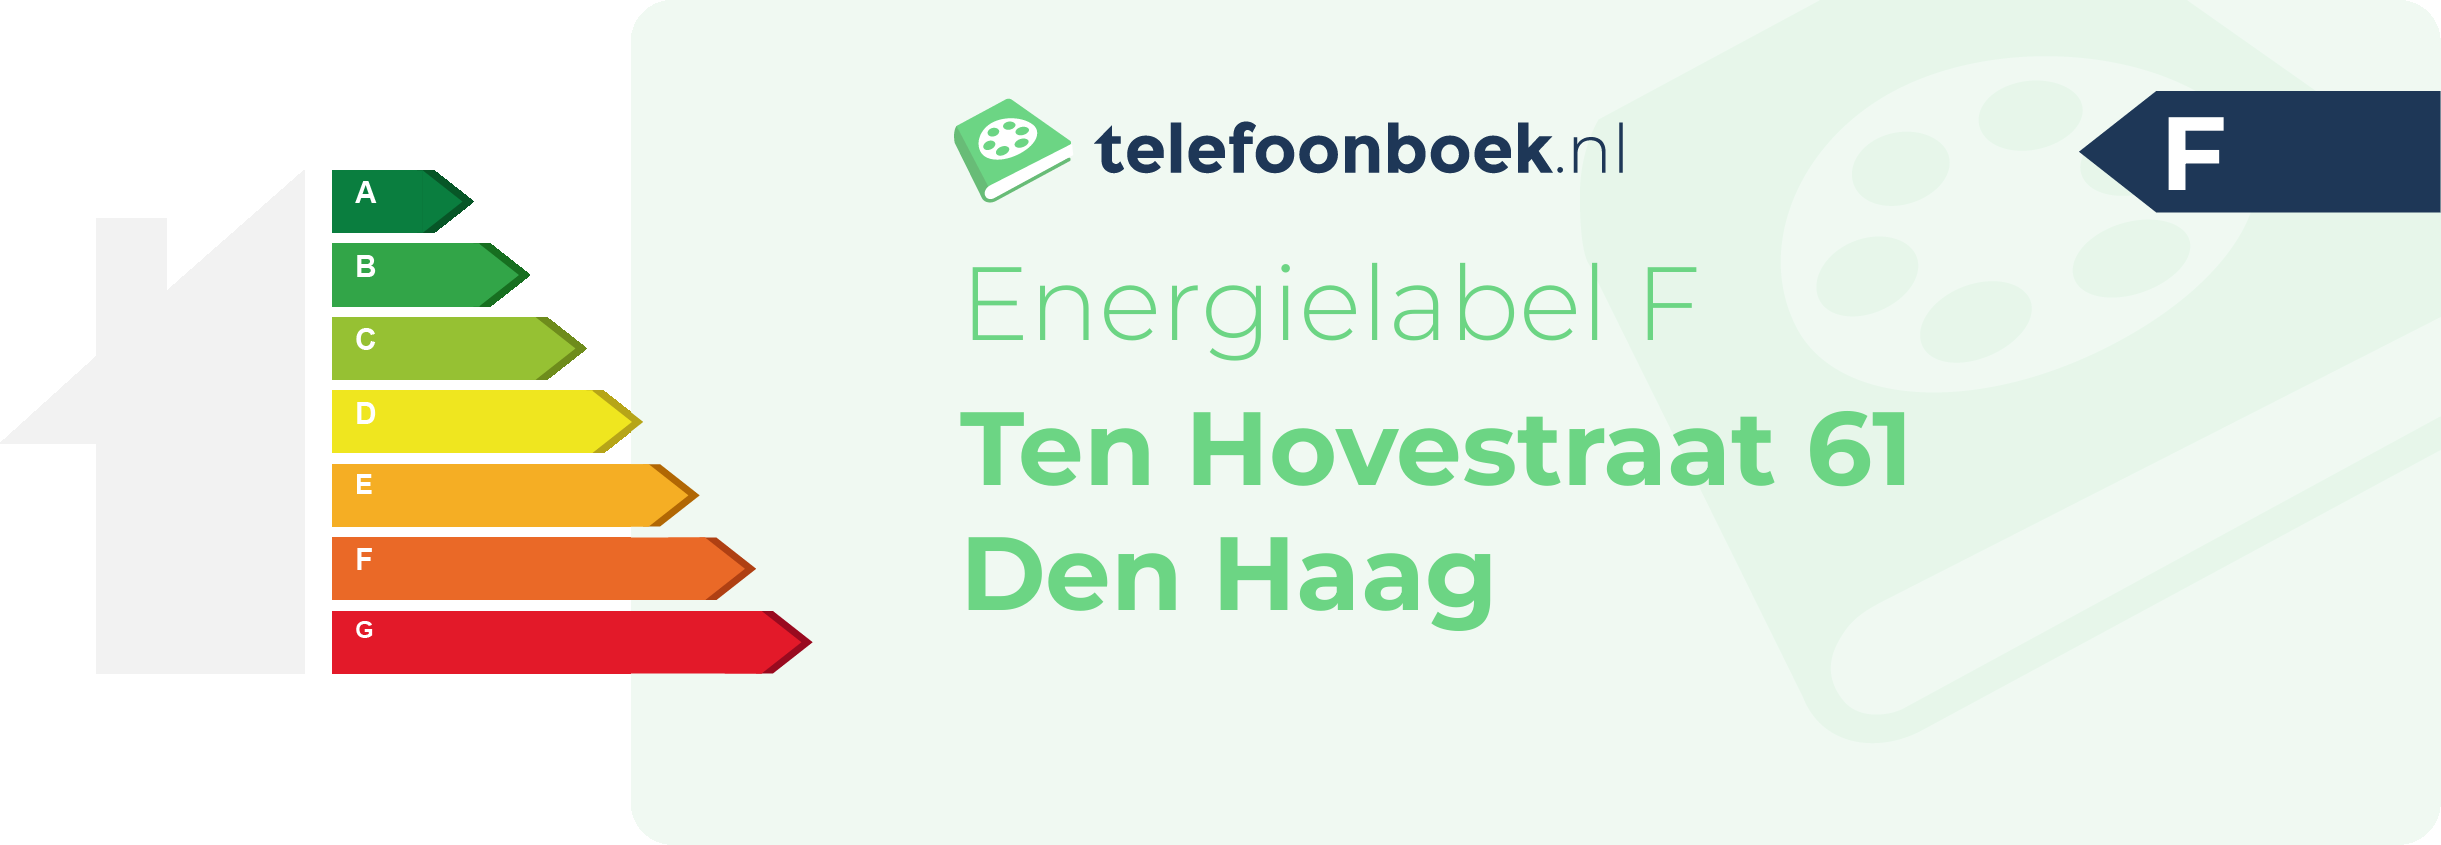 Energielabel Ten Hovestraat 61 Den Haag